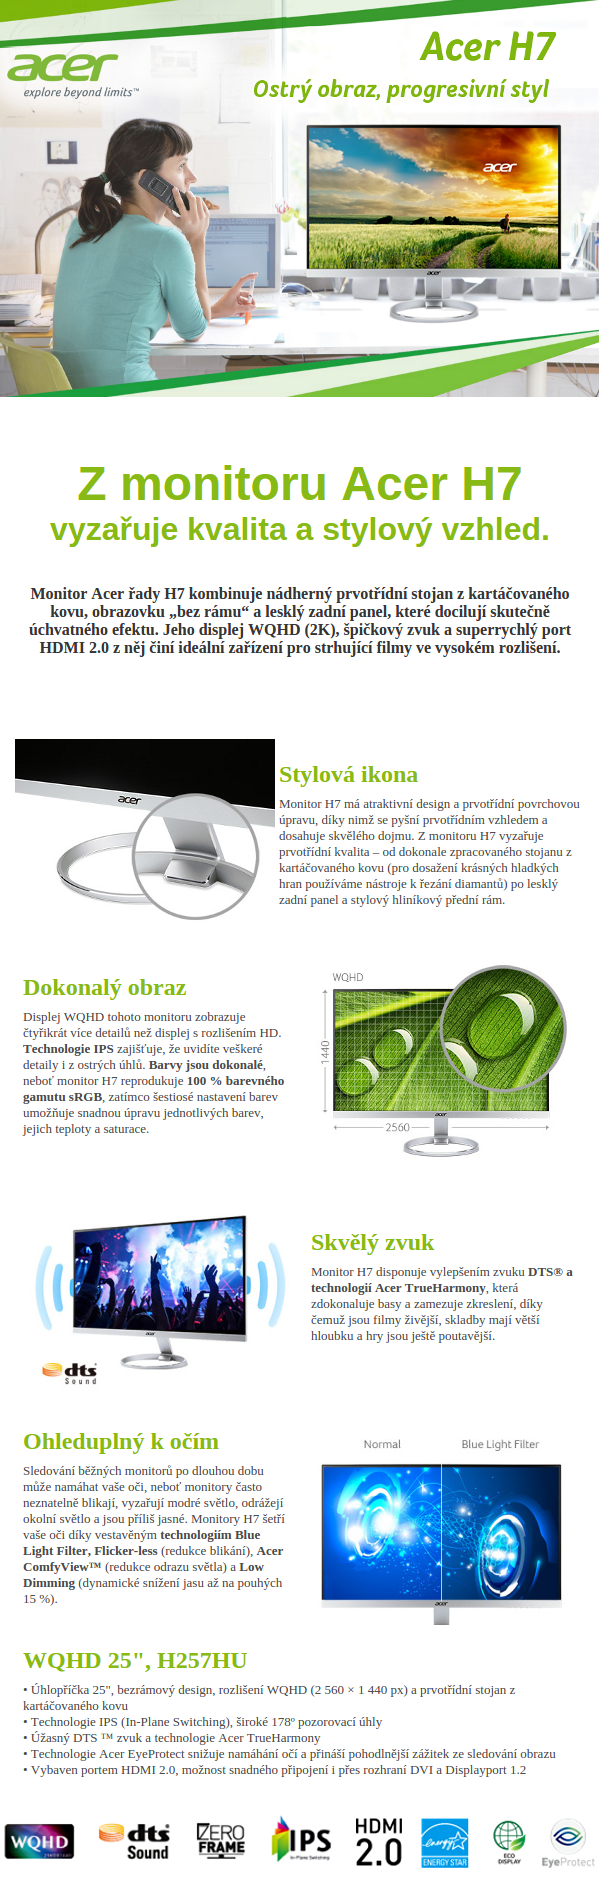 Acer H7 = Ostrý obraz, progresivní styl